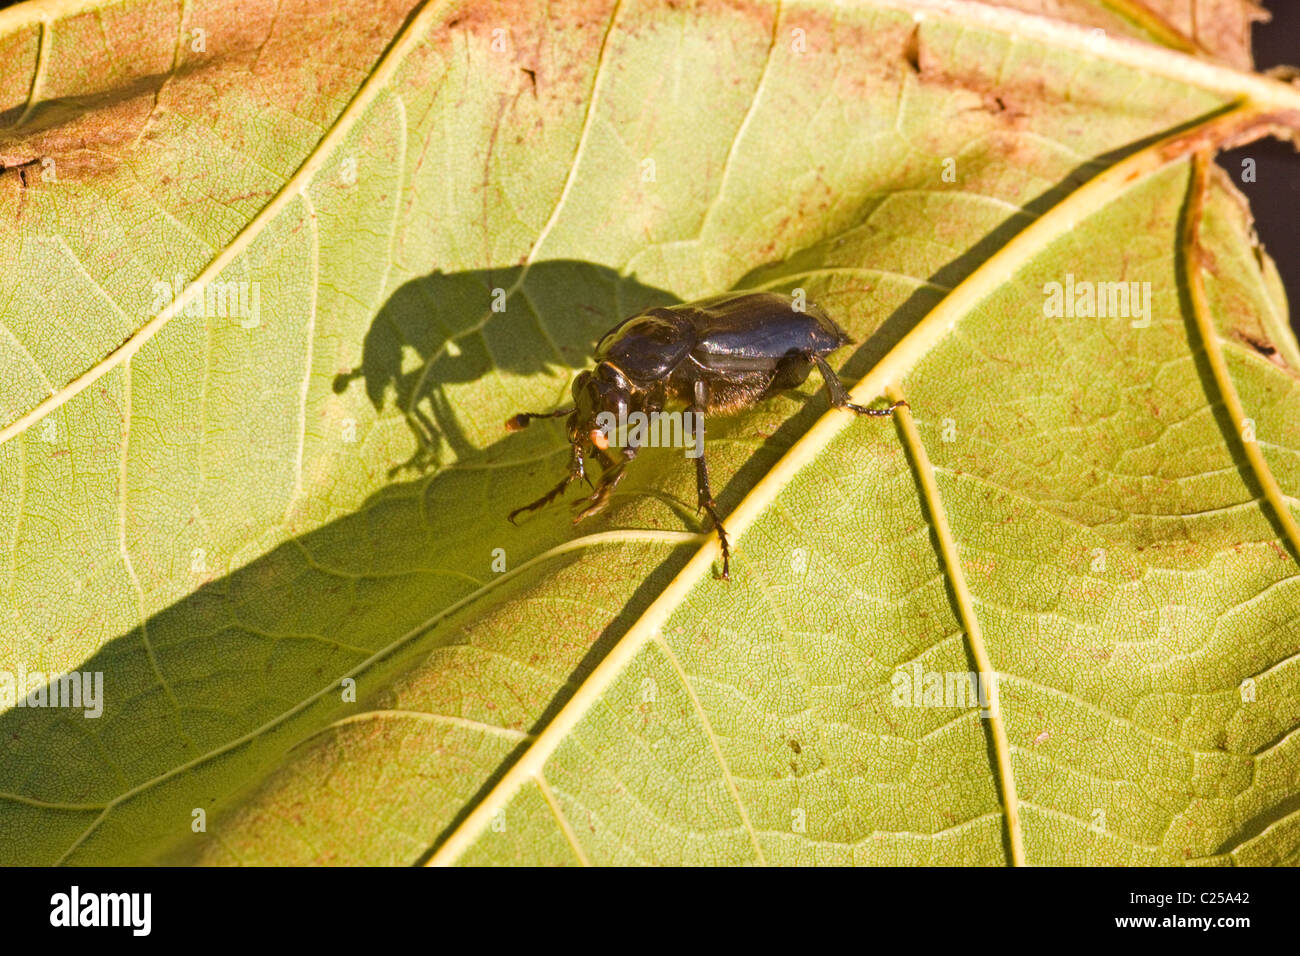 Ground beetle on autumnal leaf Stock Photo